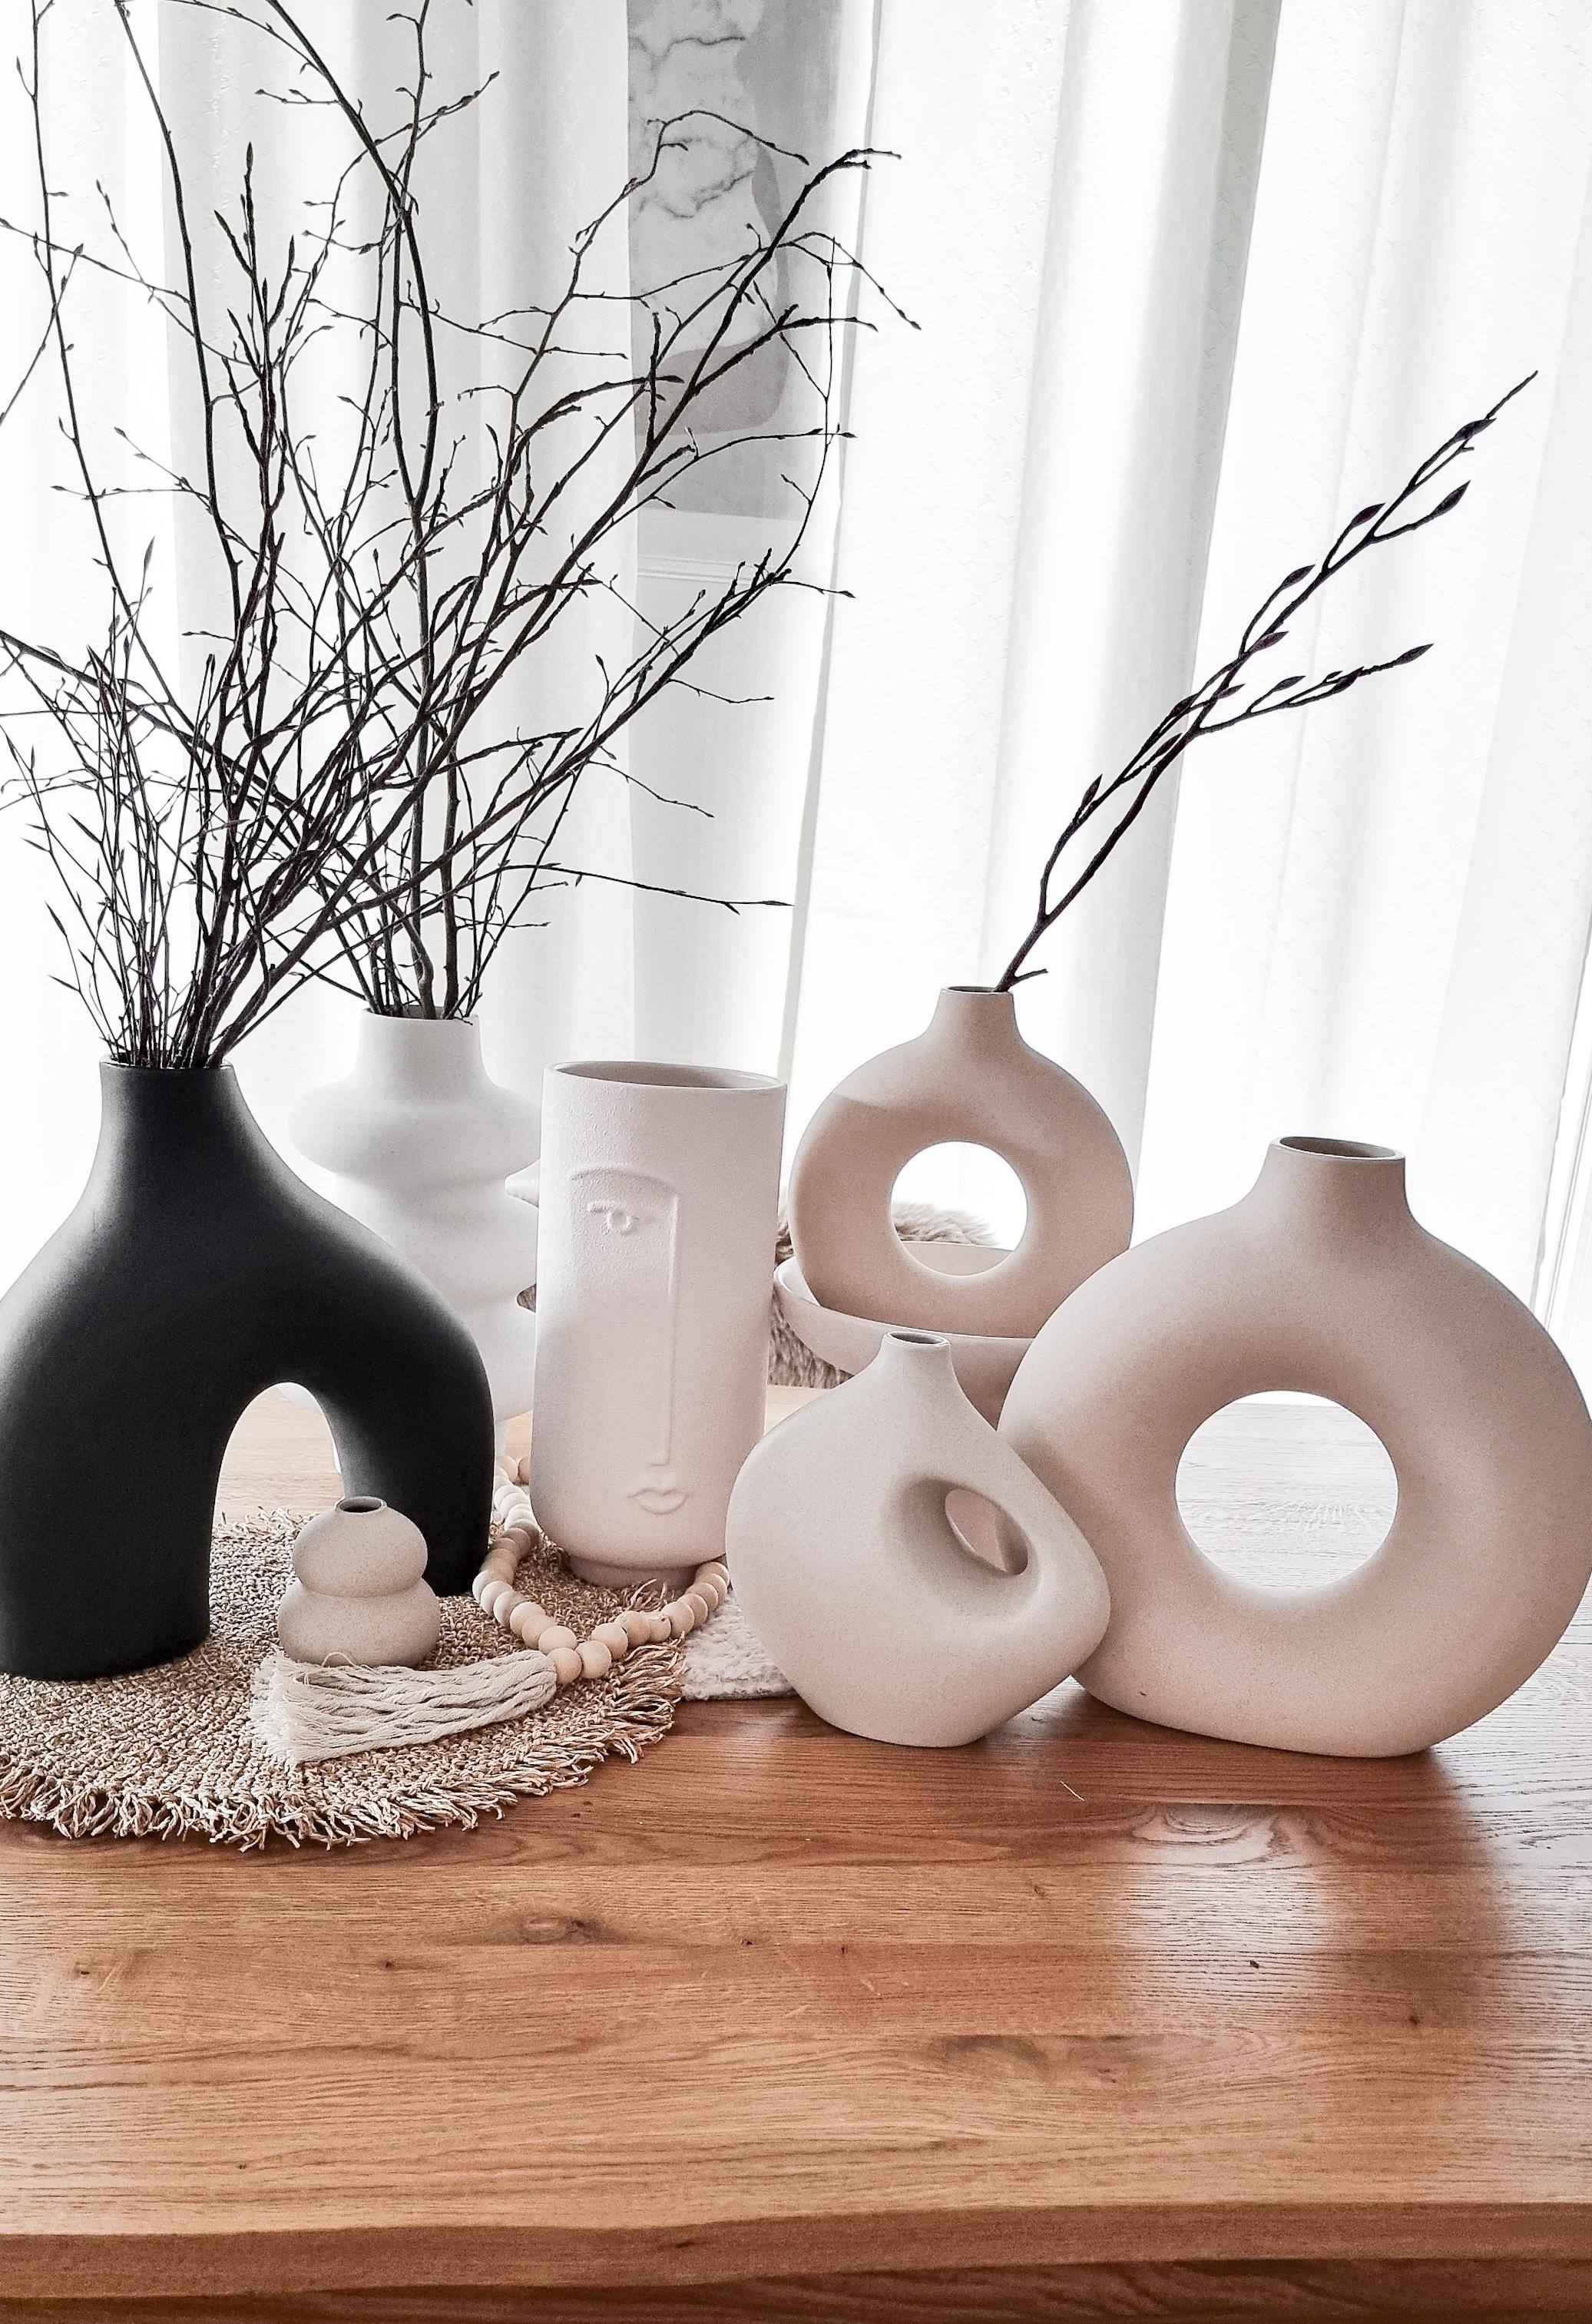 Meine geliebten Vase 💓
#dekoration #dekoliebe #diyinterior #diyhunter #diyideas #wohngefühl #wohnzimmerideen #home